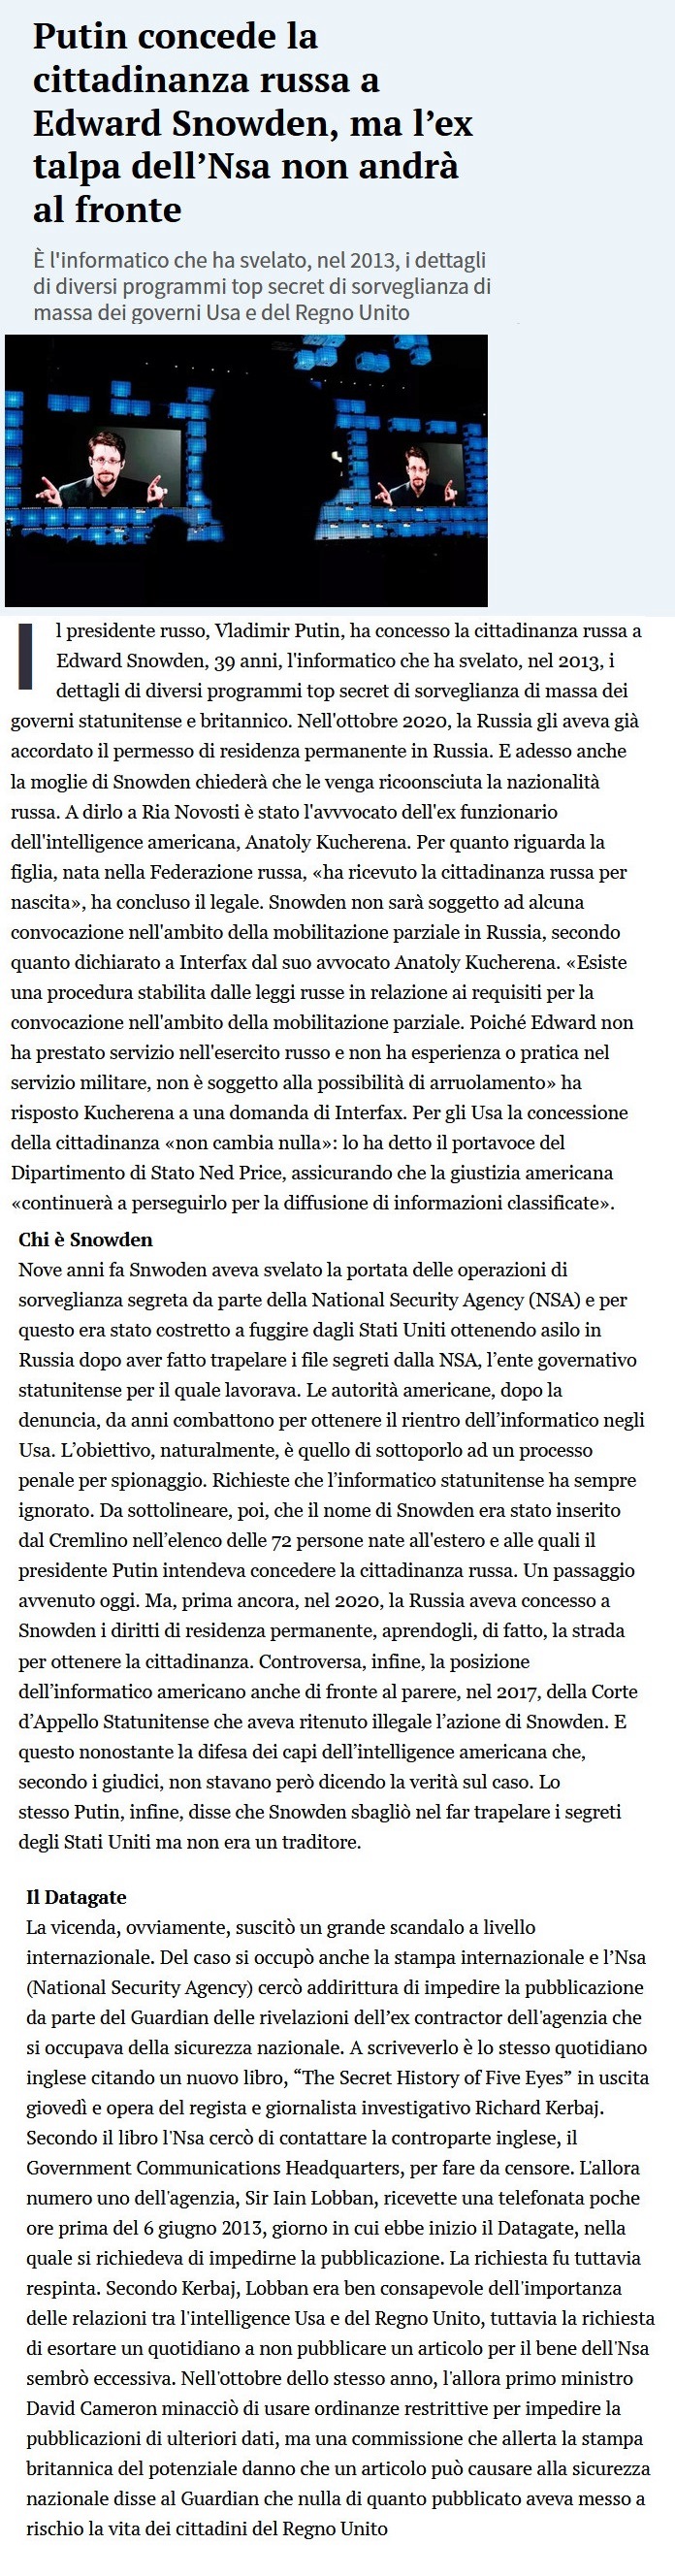 Putin - Pagina 2 Putin53